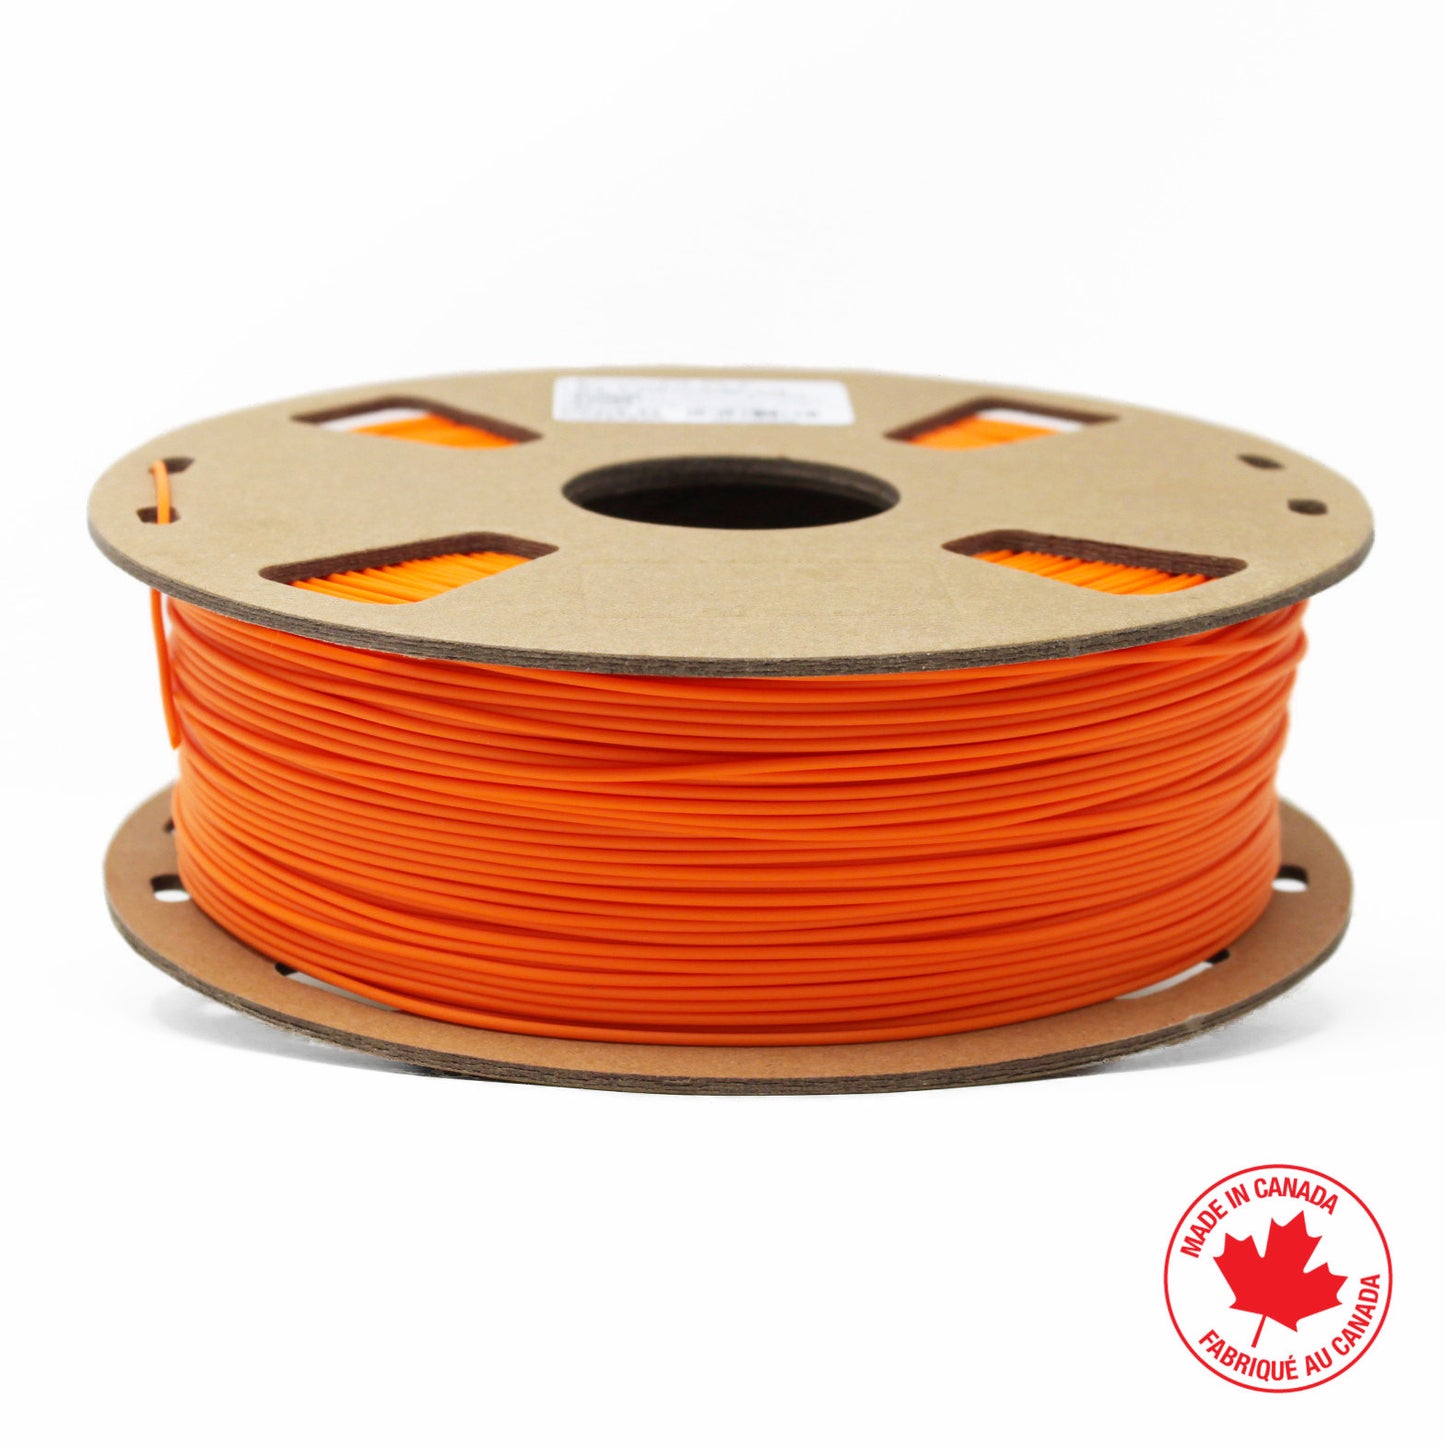 EconoFil Low Cost PLA 3D Printer Filament Canada